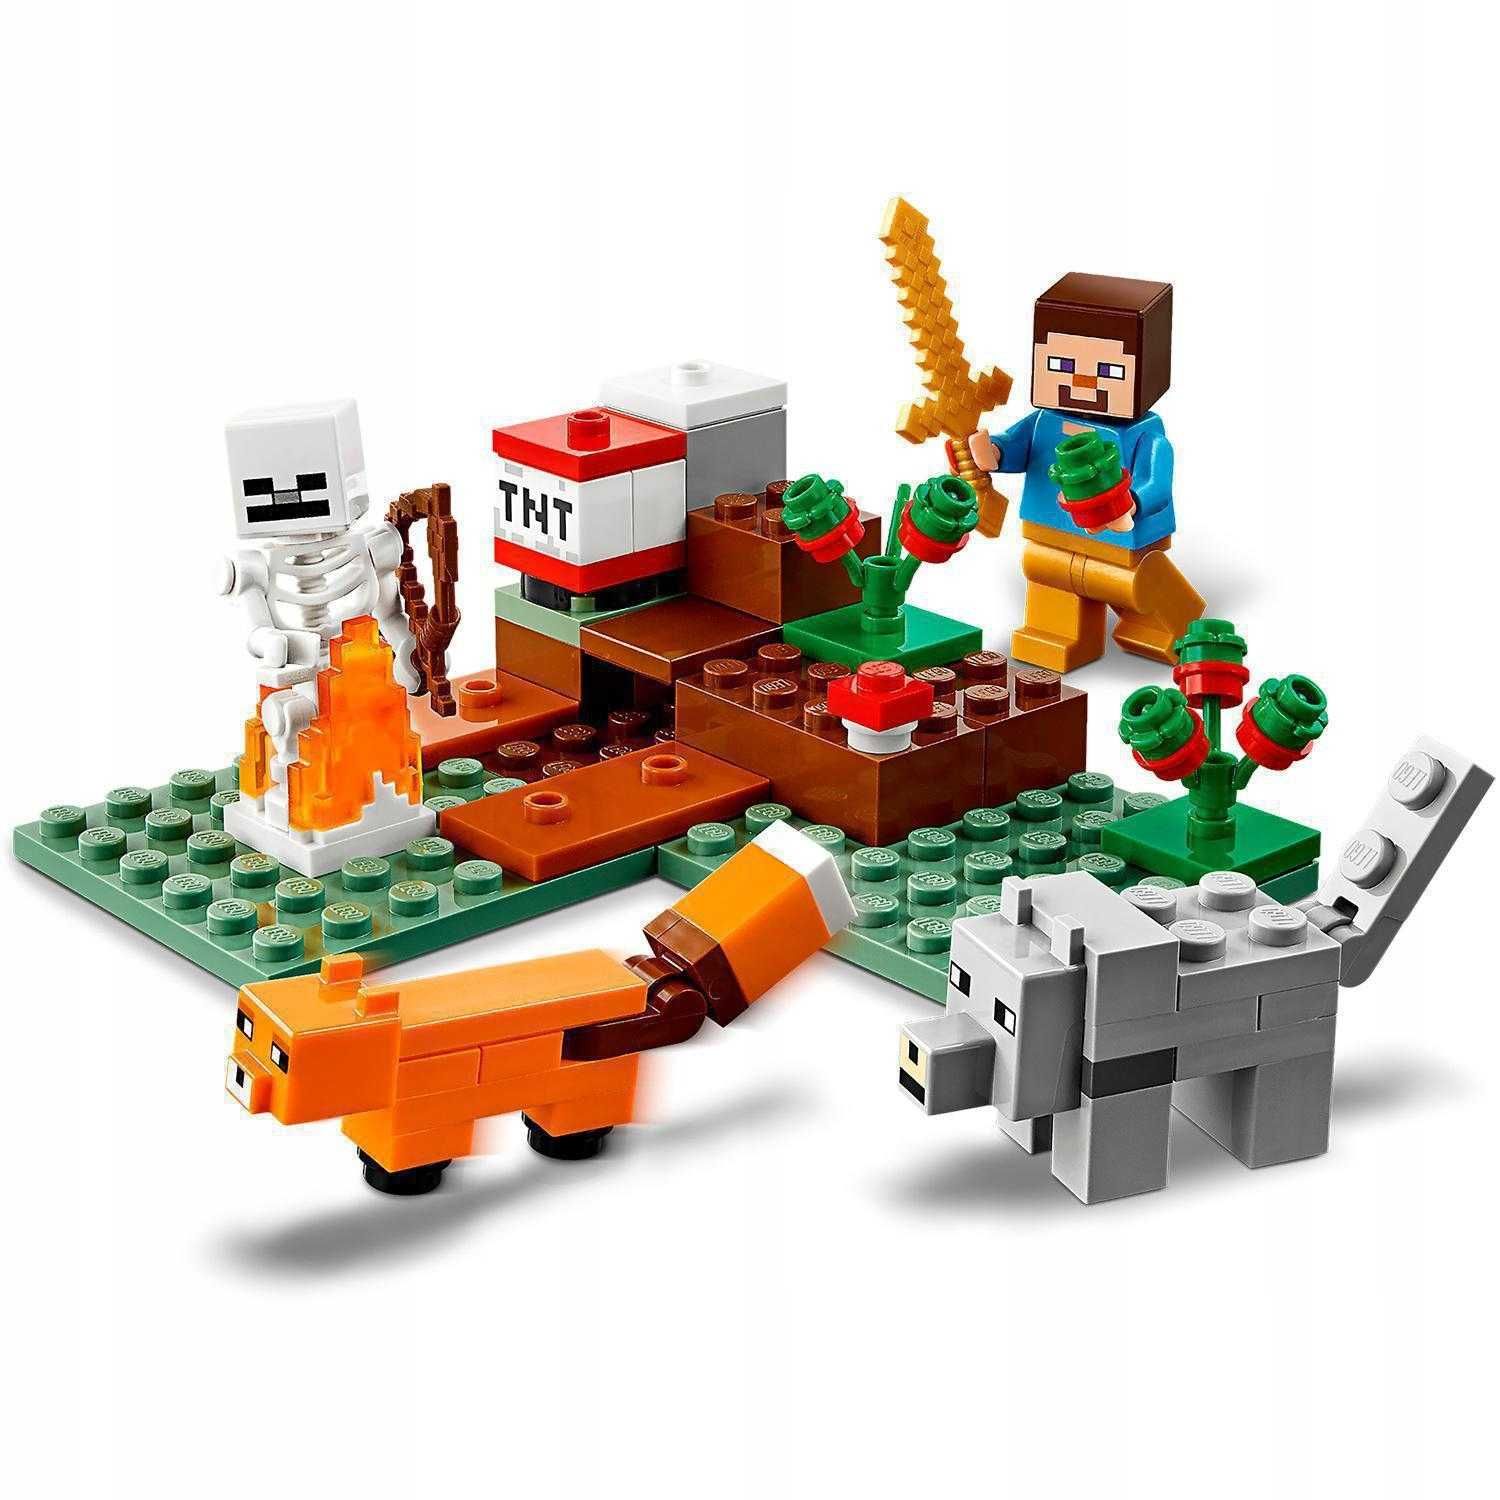 LEGO Minecraft 21162 Przygoda w tajdze